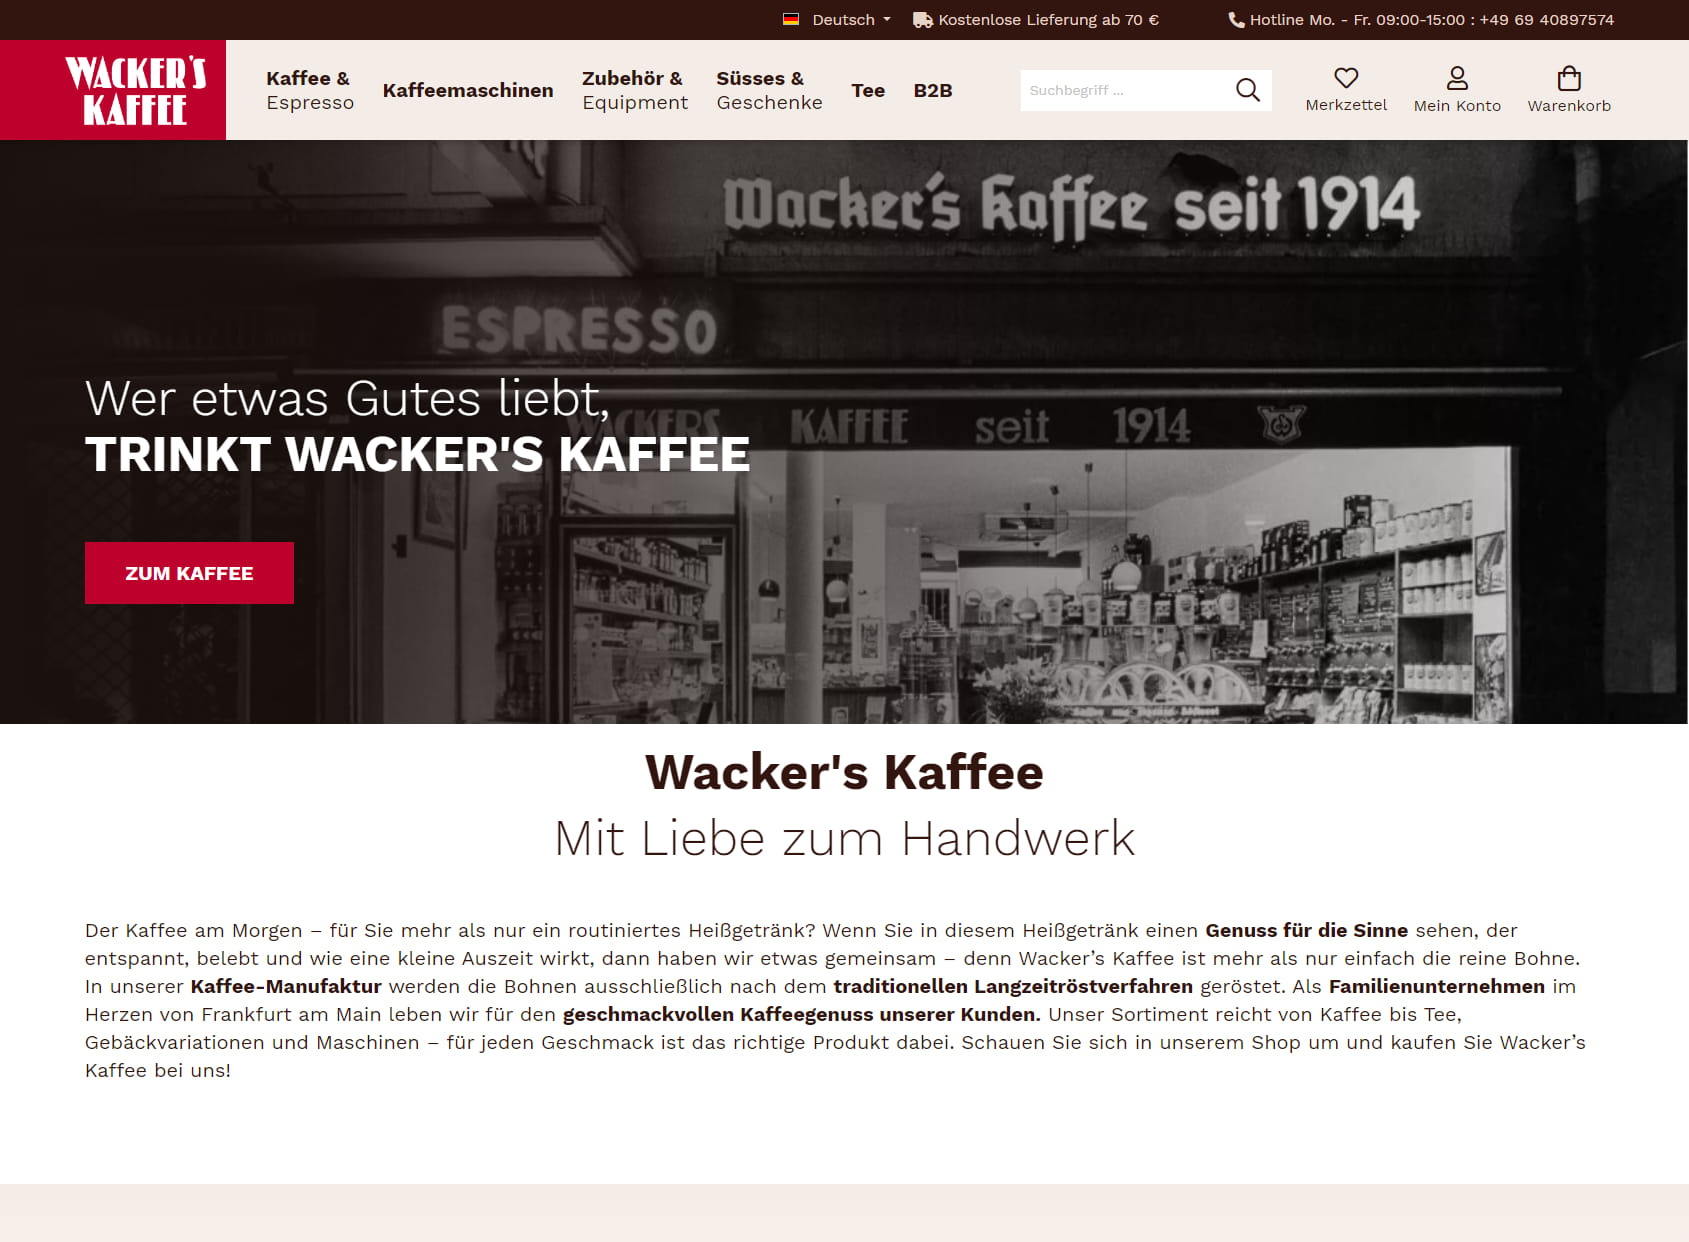 Wacker's coffee shop